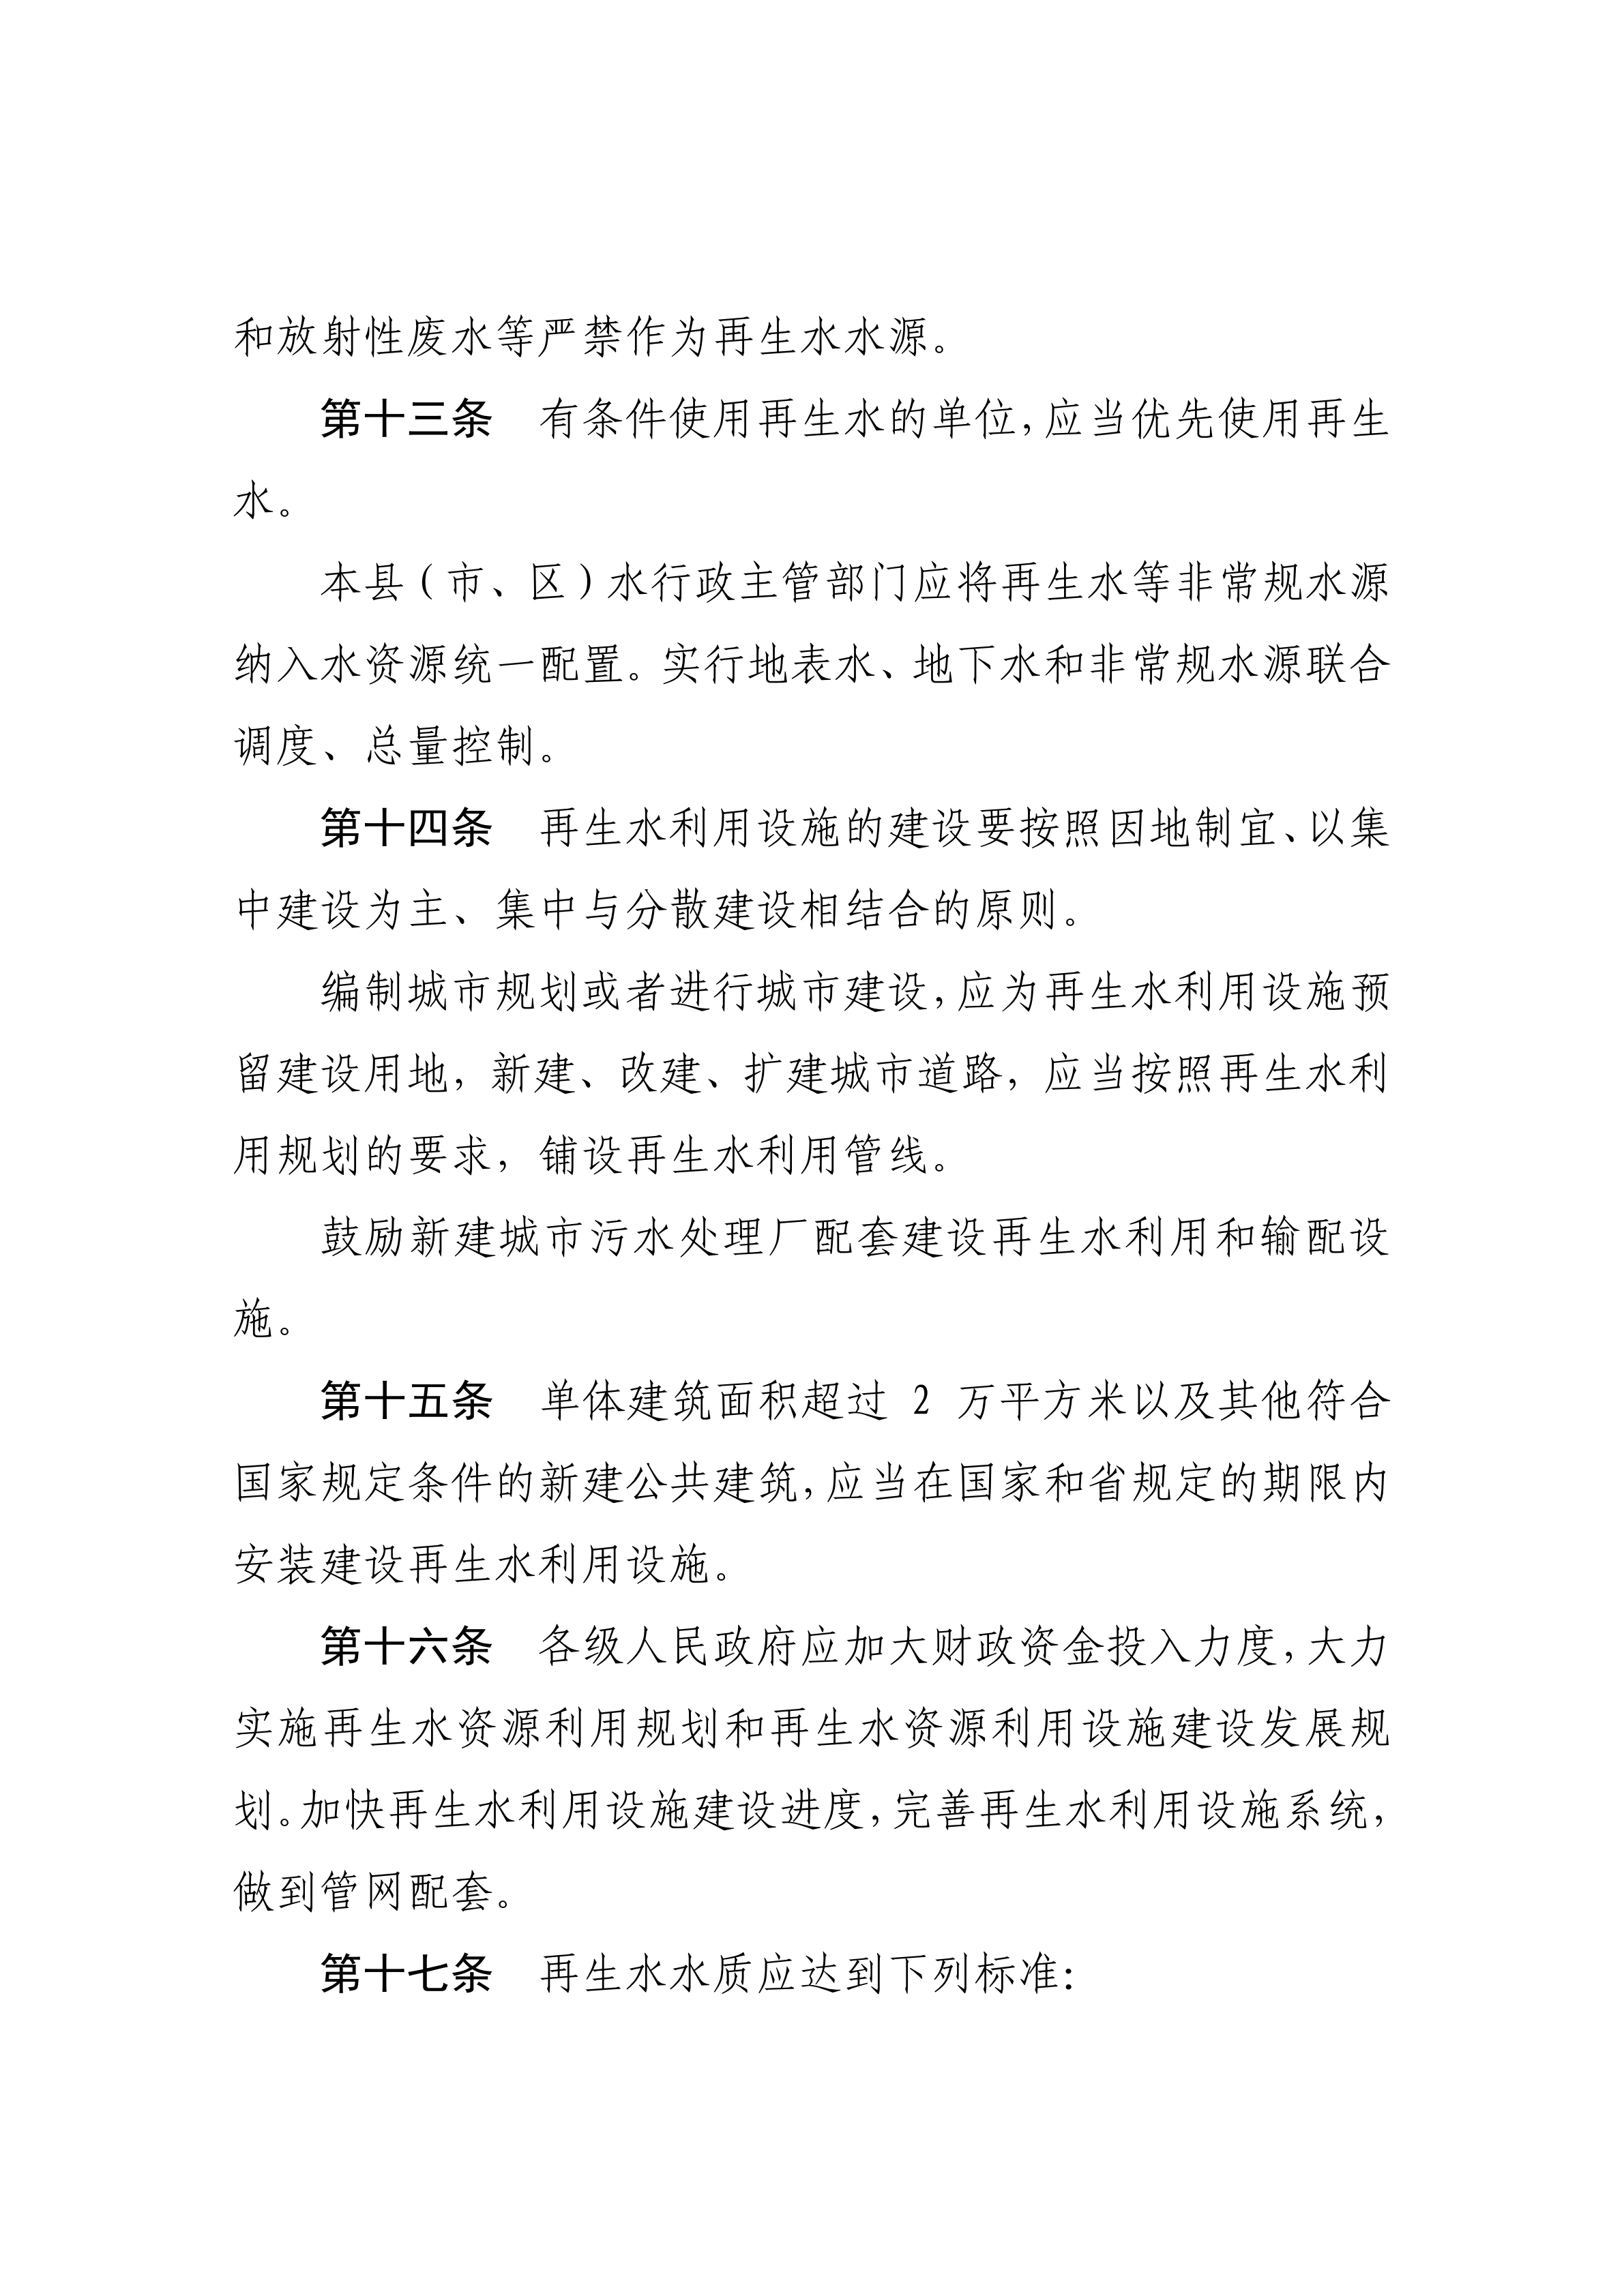 湛江市水务局关于印发修改《湛江市非常规水资源管理办法（试行）》（湛部规2021-27）标题的通知_06.png